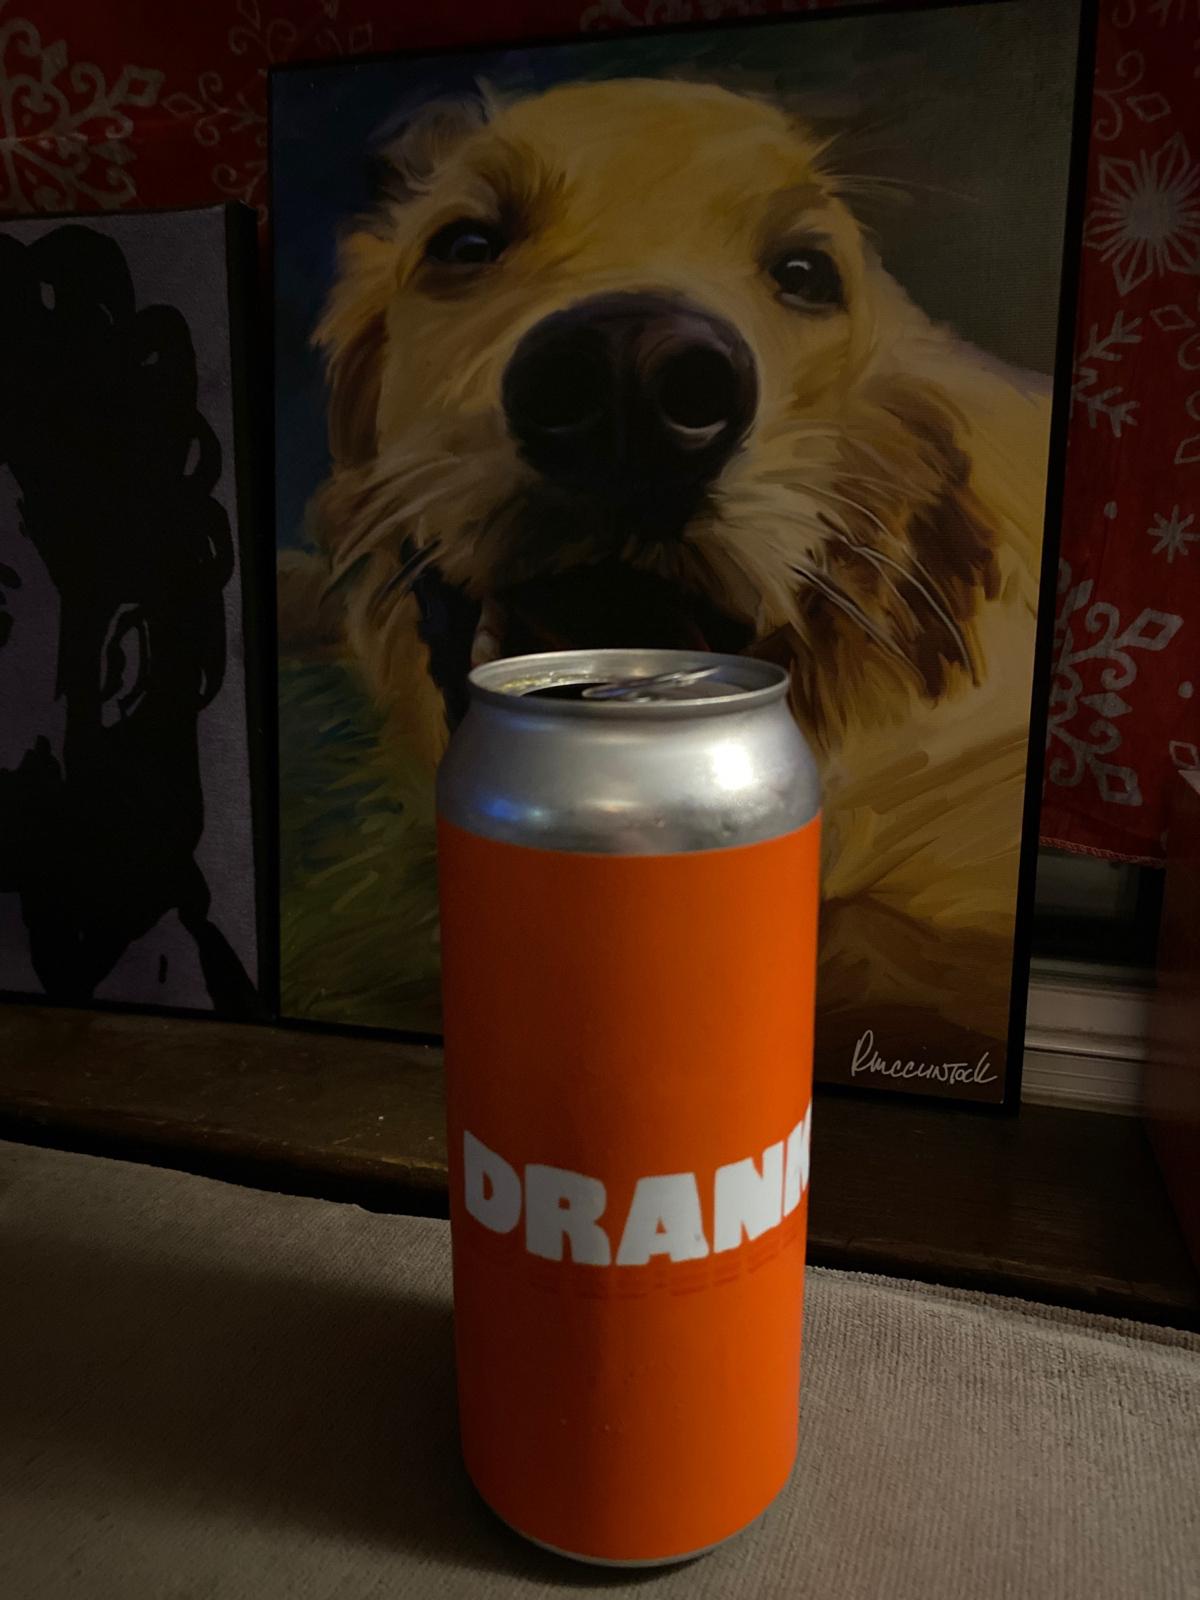 Orange Drank